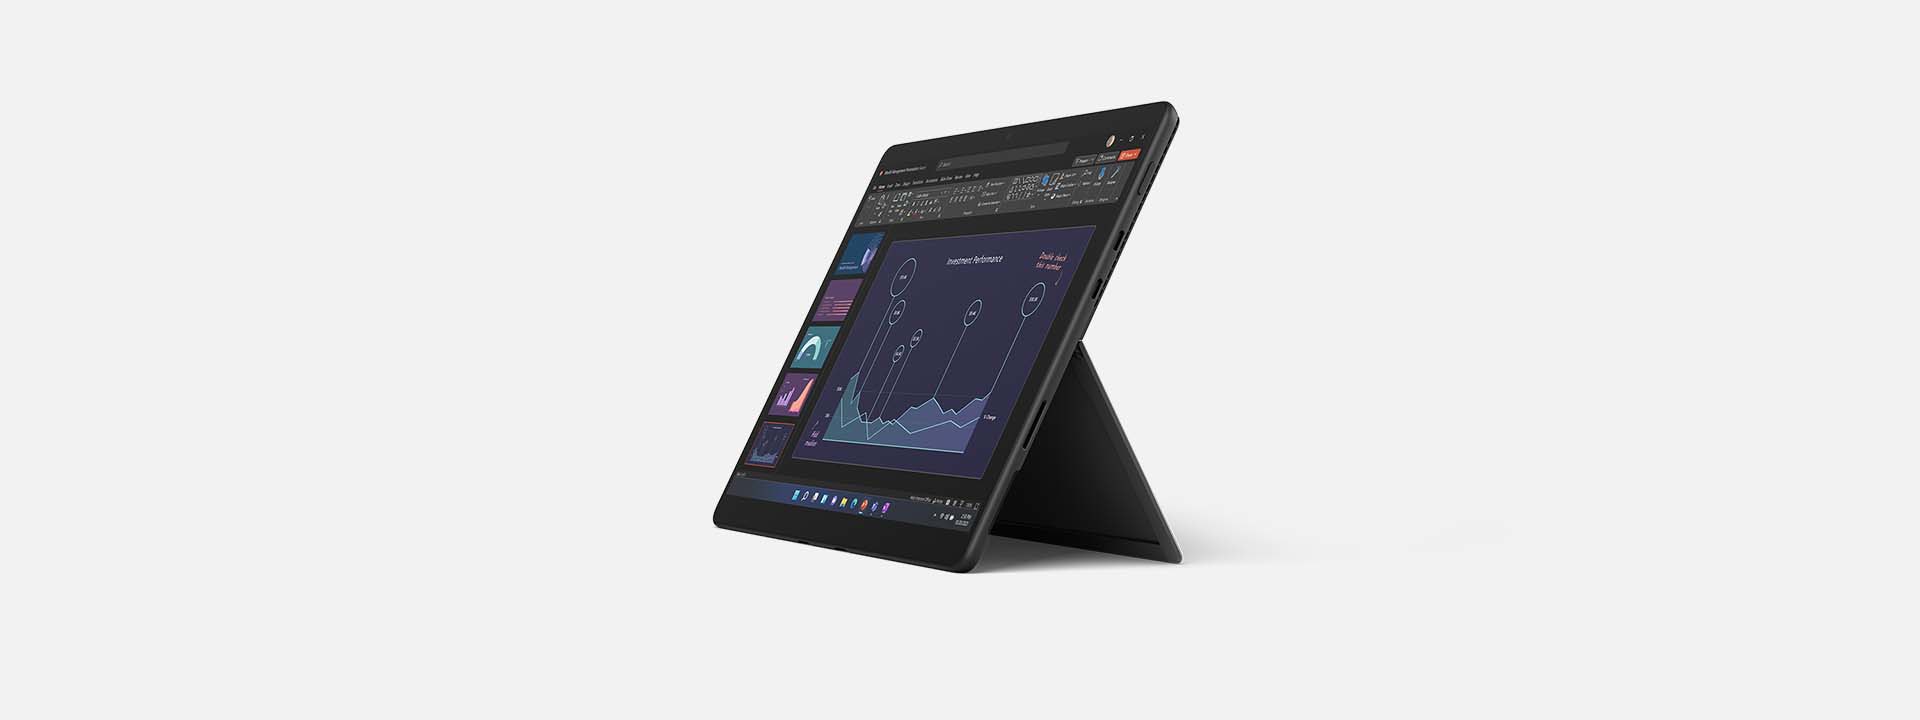 バッテリー駆動時間をハイライトする画面を表示した Surface Pro 8 のレンダー